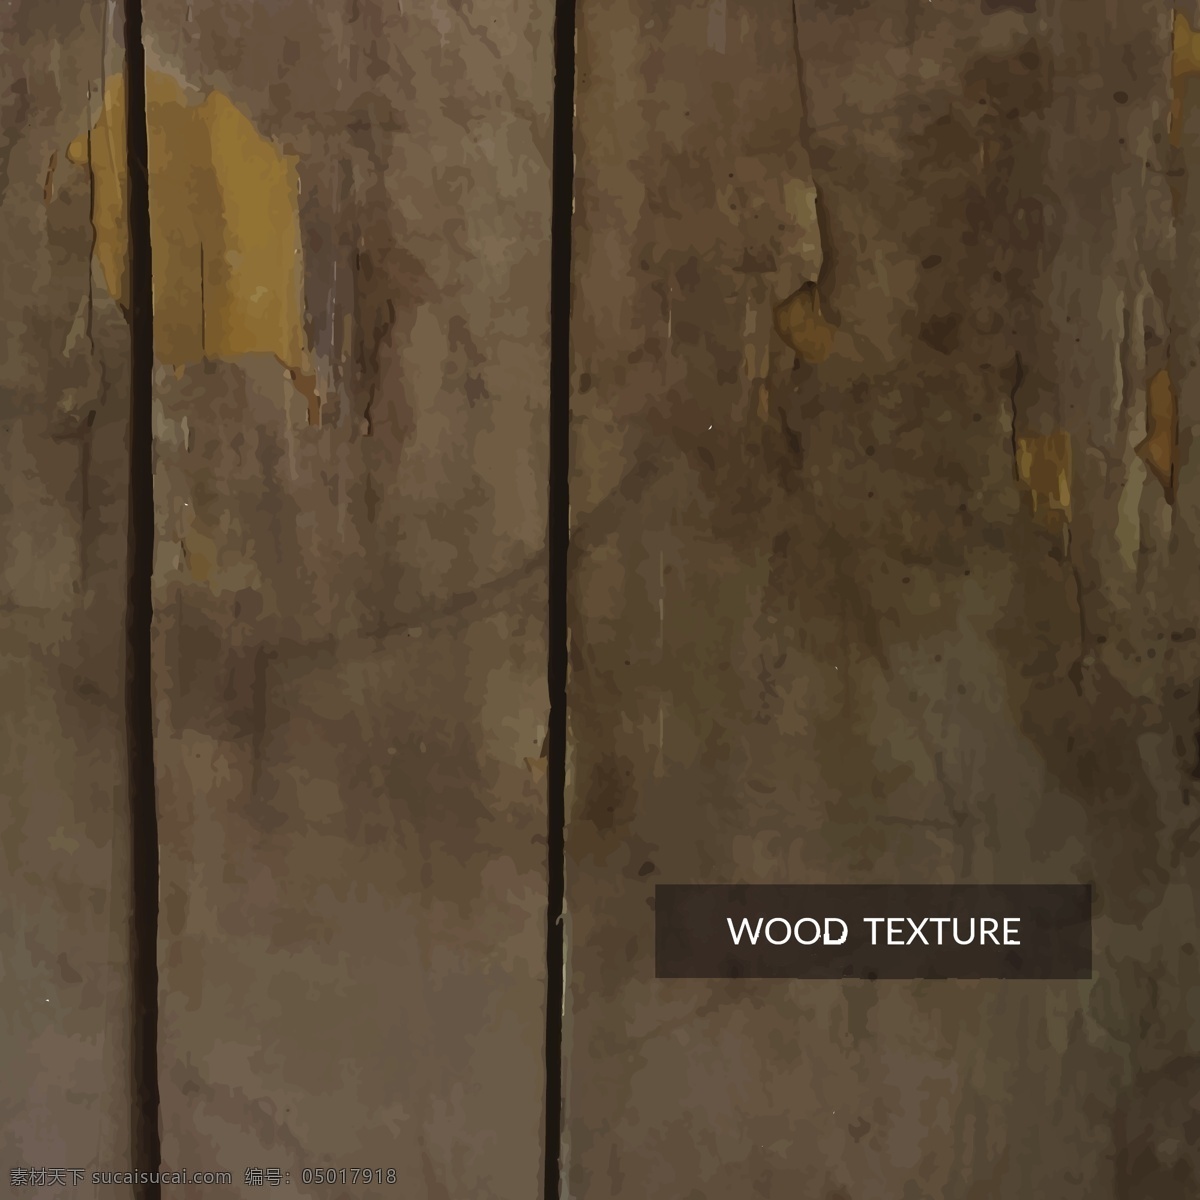 黑暗 木质 纹理 背景 抽象 木材 壁纸 旧的 装饰 木 裂纹 划痕 表面